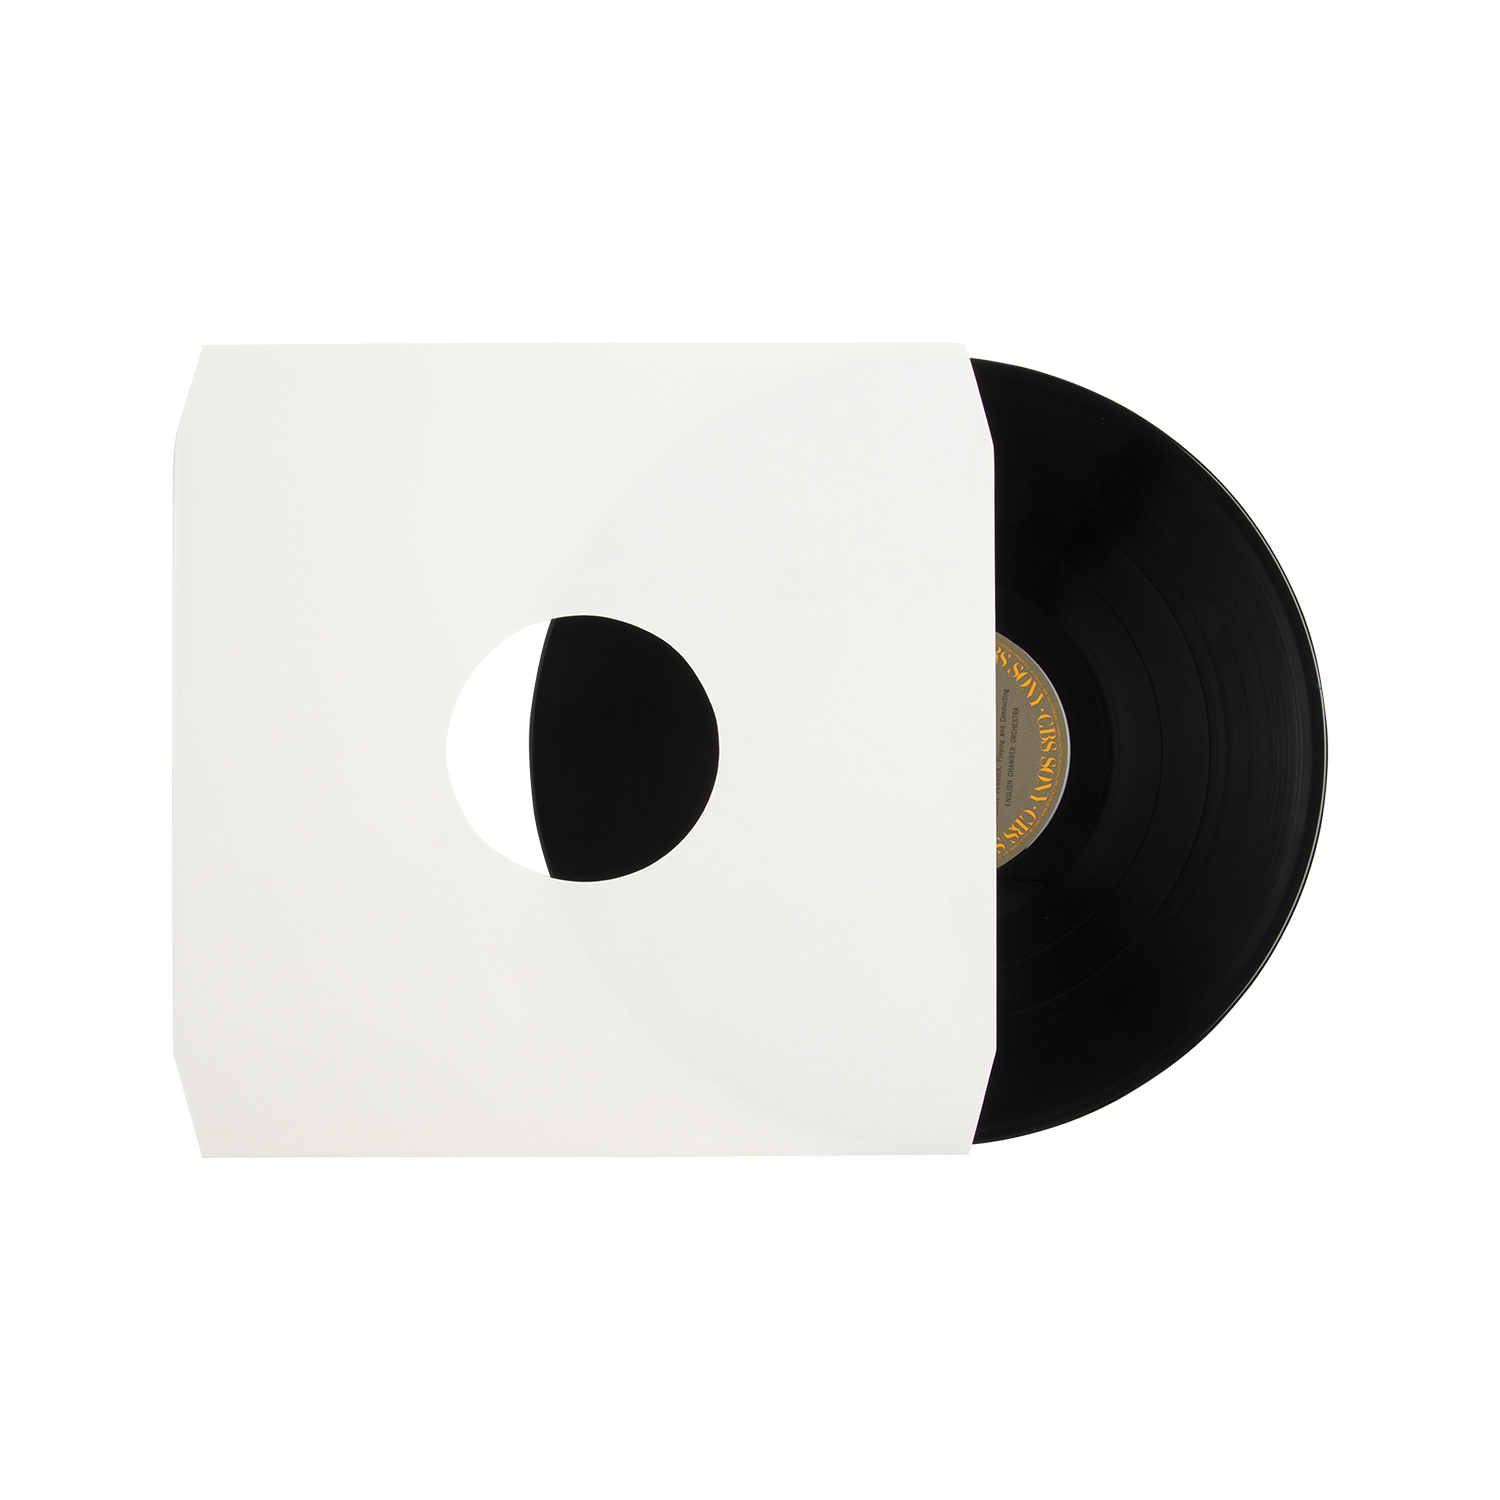 Άσπρα/μαύρα/έγχρωμα εσωτερικά μανίκια χαρτιού LP με γωνία